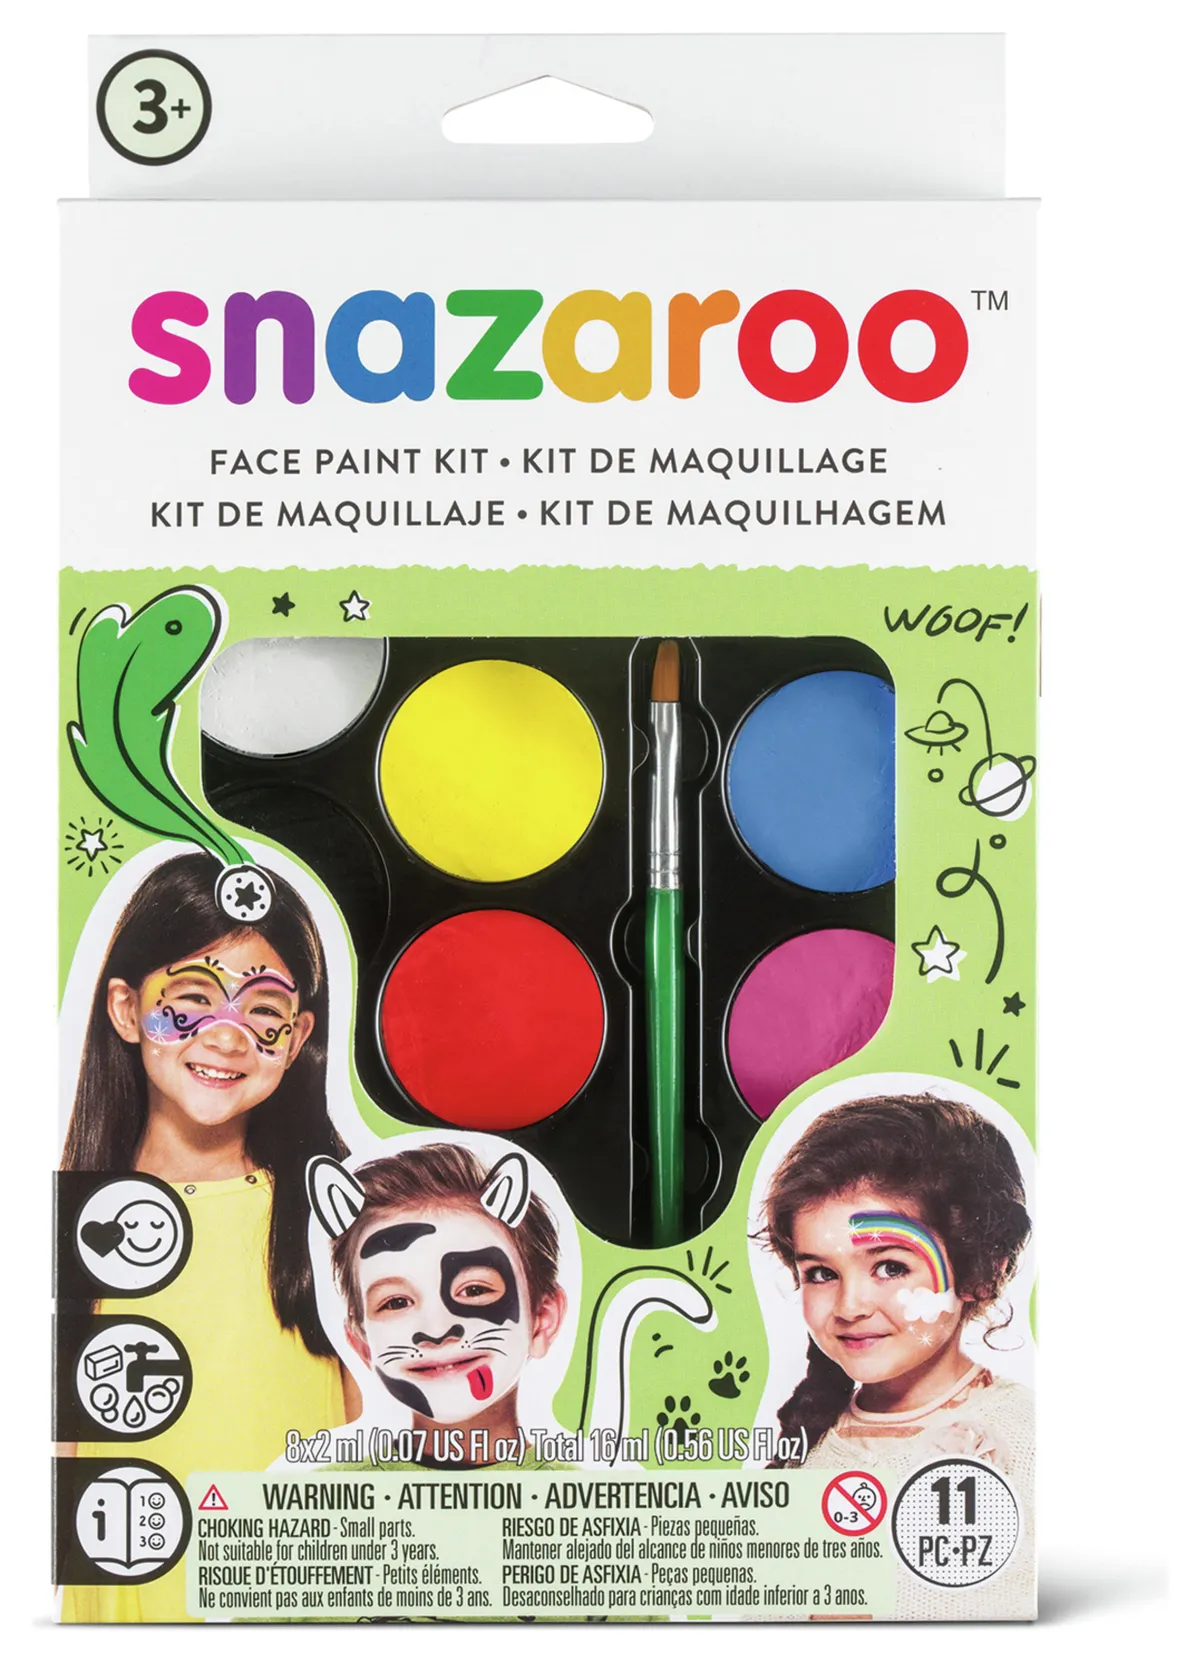 Blue Squid Face Paint Kit for Kids 12 Color Palette, 30+3 Stencils